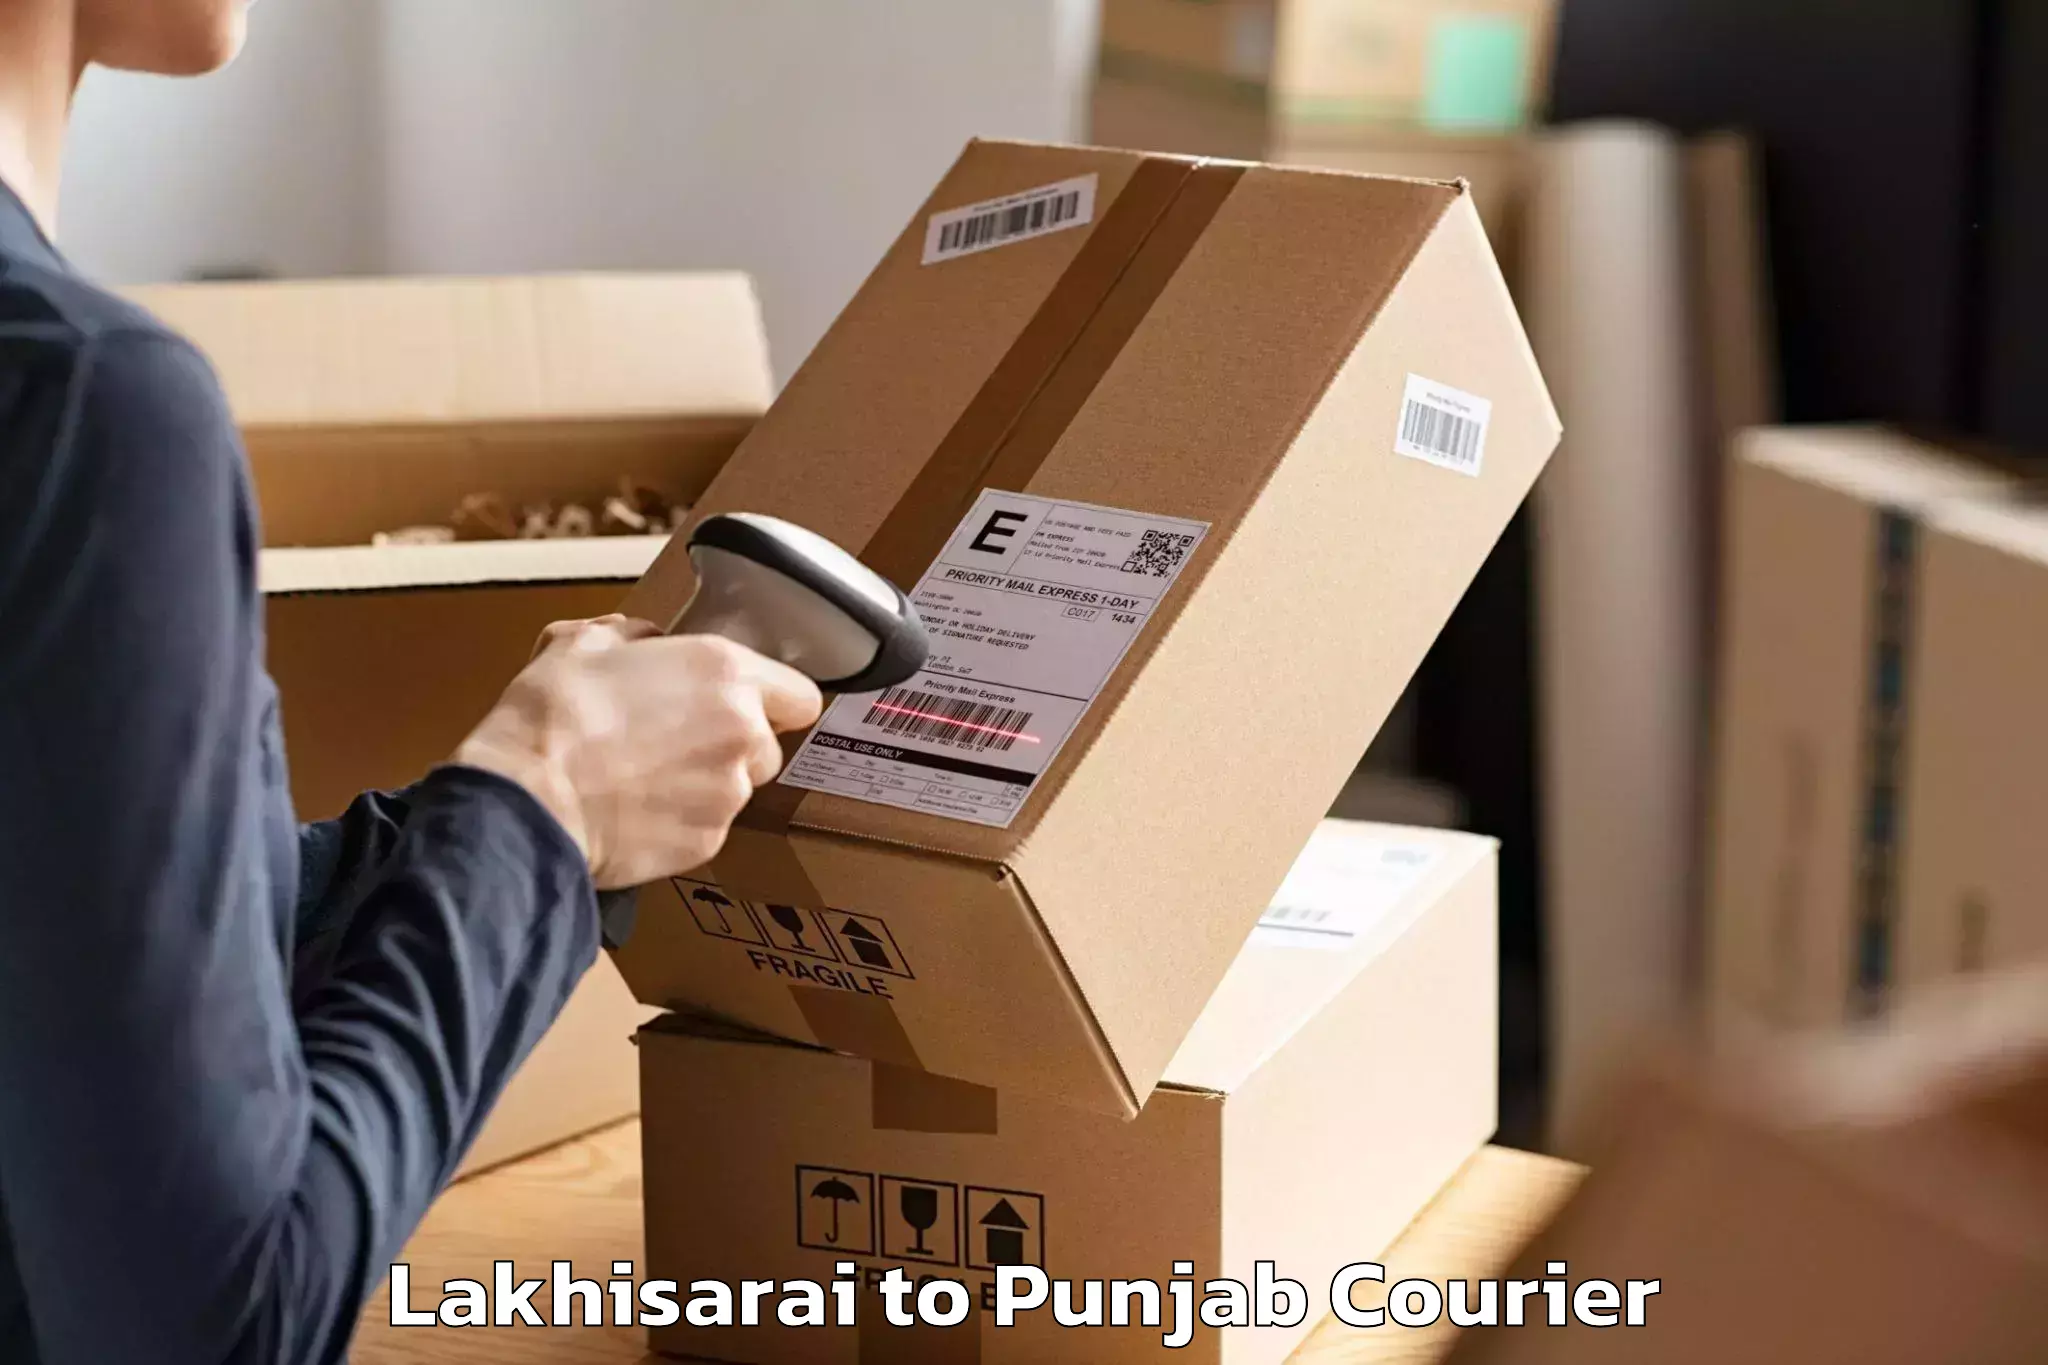 Trusted moving company Lakhisarai to Batala